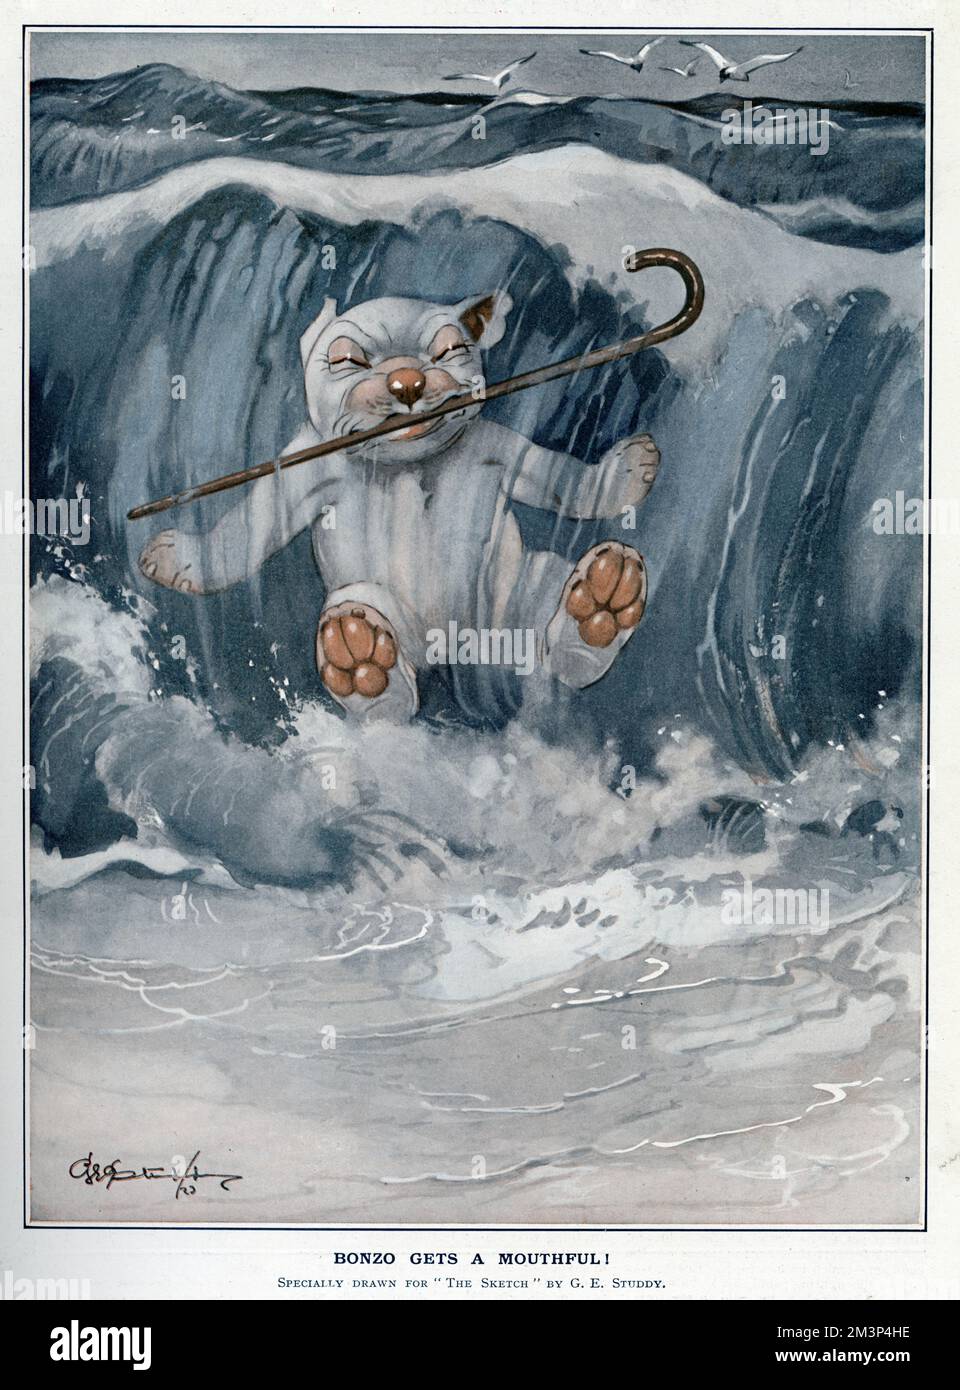 Bonzo ottiene un boccaglio di acqua di mare quando una grande onda lo supera. George Ernest Studdy (1878-1948), fu il creatore di 'Bonzo', un piccolo cane con occhi simili a piattini e allevamento indiscriminato che apparve per la prima volta nello Sketch nel 1922. La mania di Bonzo ha spazzato il mondo con cartoline, annuali, giocattoli e altri articoli. Il credito dovrebbe essere: Proprietà di George Studdy/Gresham Marketing Ltd./ILN/Mary Evans Data: 18 luglio 1923 Foto Stock